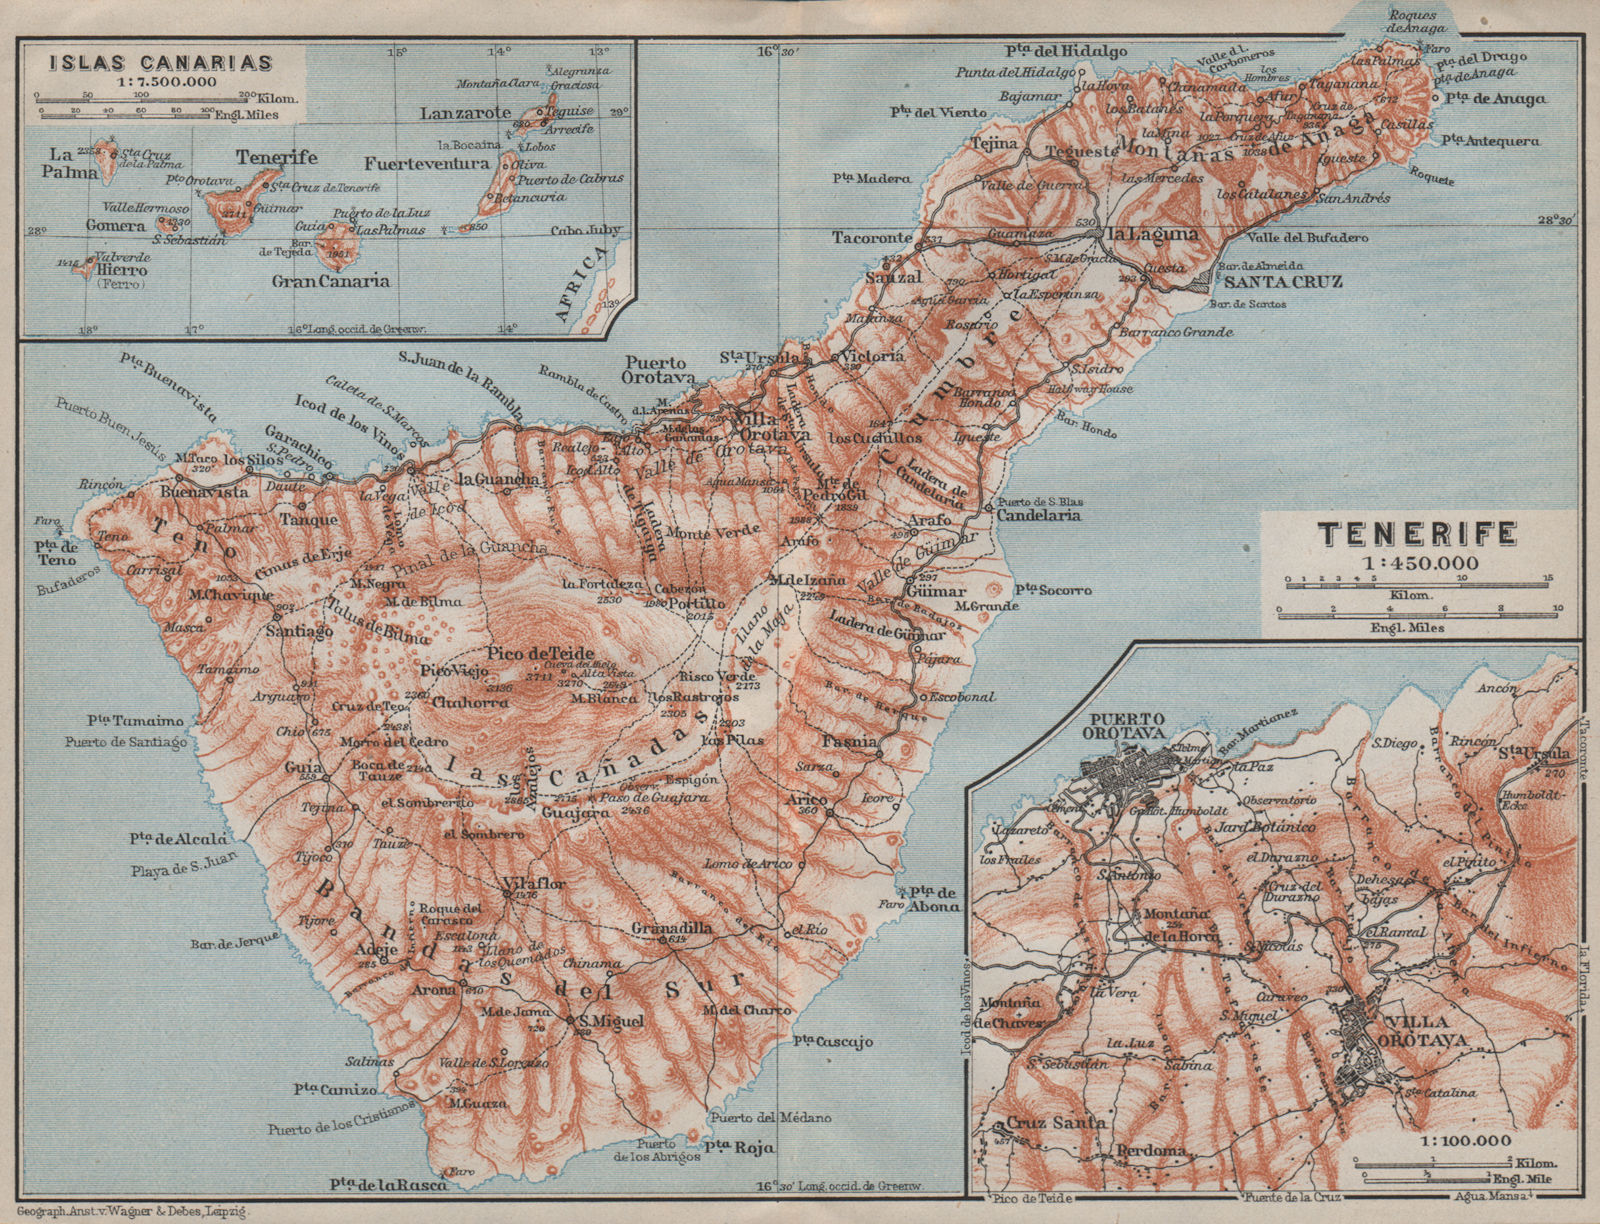 TENERIFE. La Orotava. Puerto de la Cruz. Islas Canarias Canary Islands 1911 map